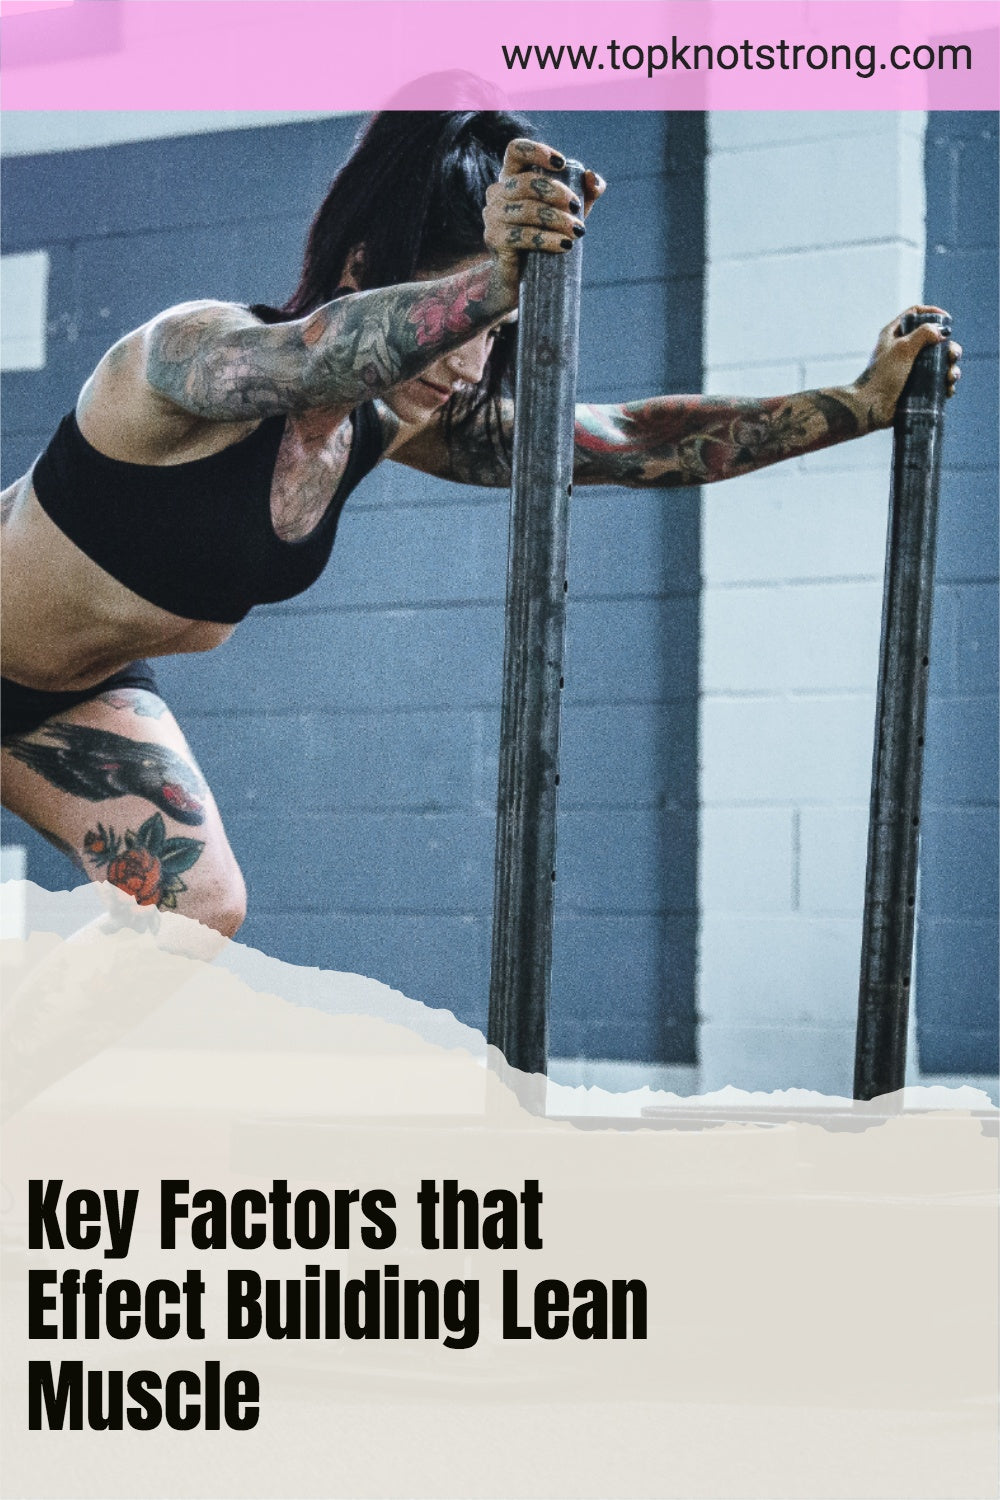 Key Factors that Affect Building Lean Muscle